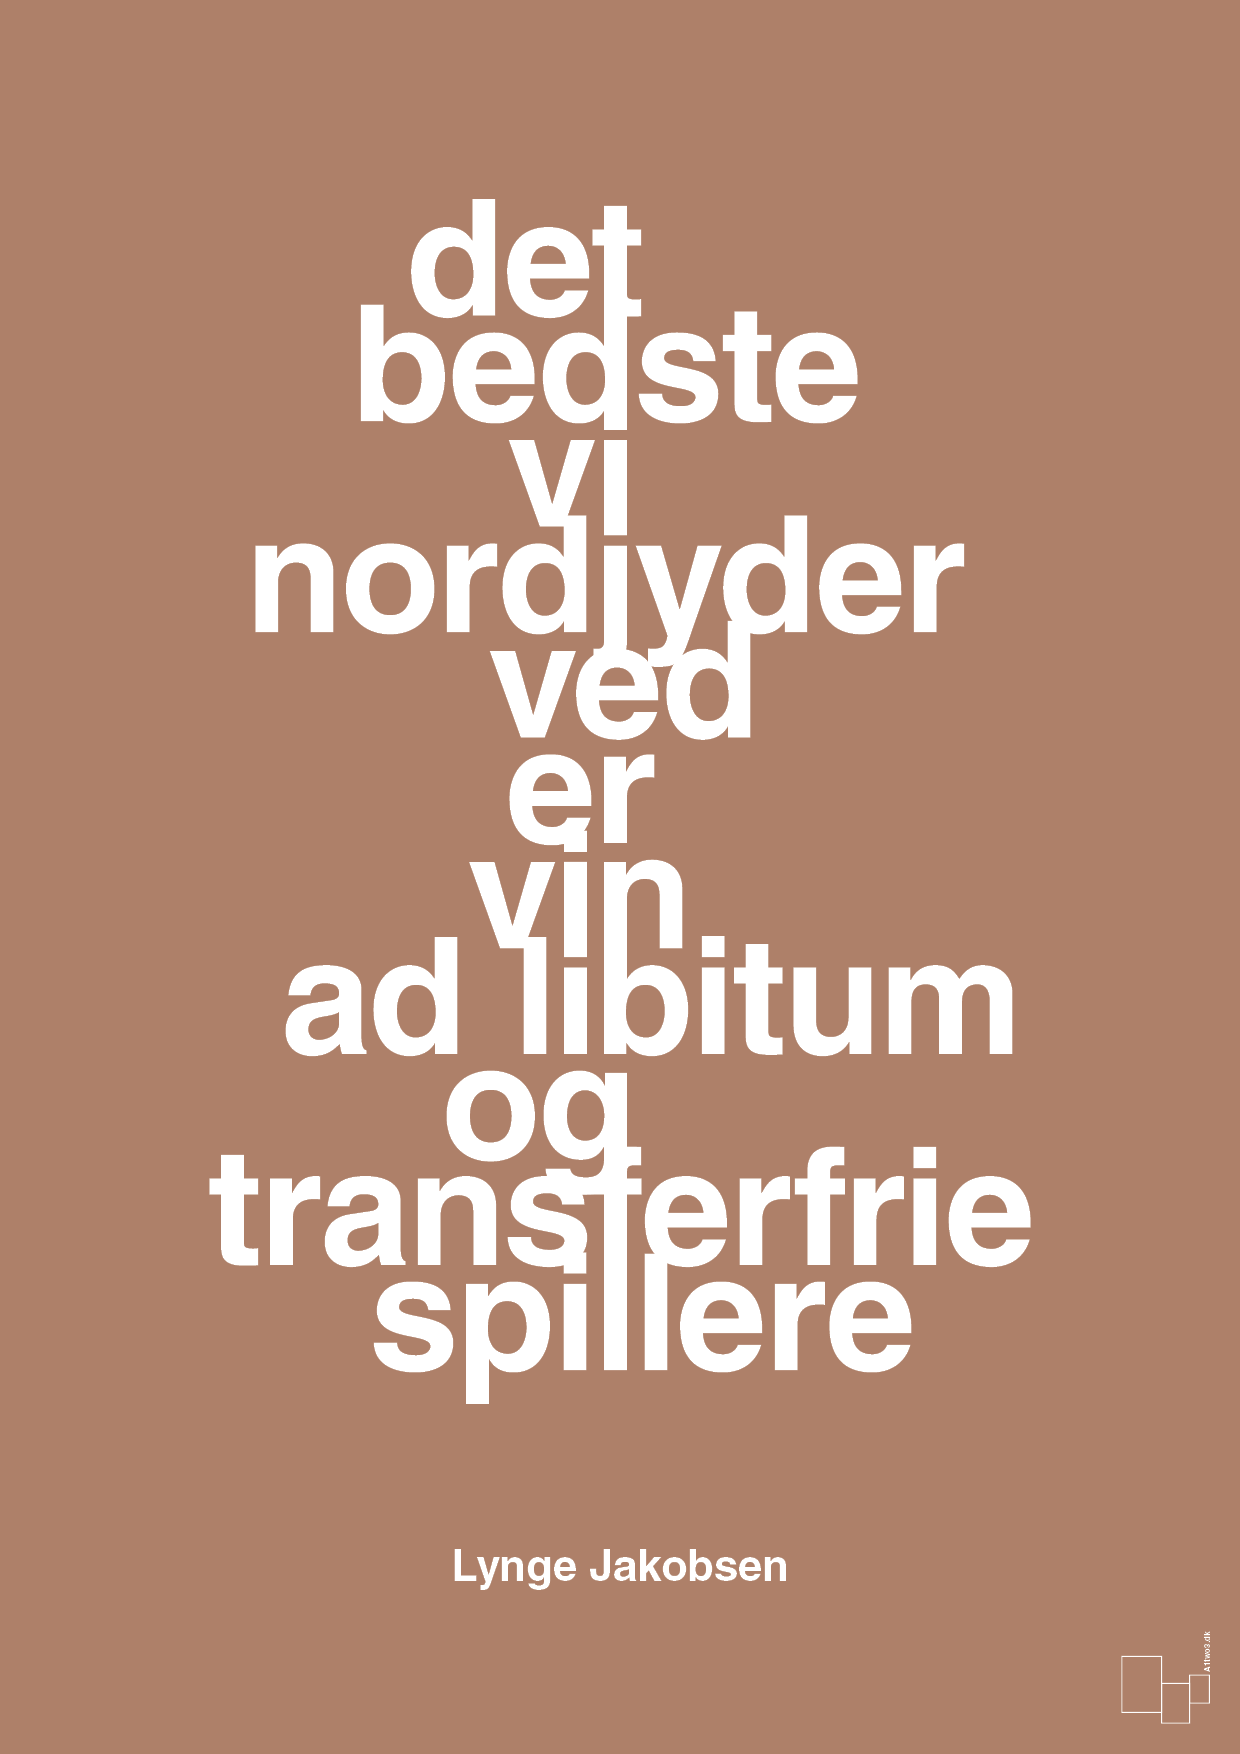 det bedste vi nordjyder ved er vin ad libitum og transferfrie spillere - Plakat med Citater i Cider Spice